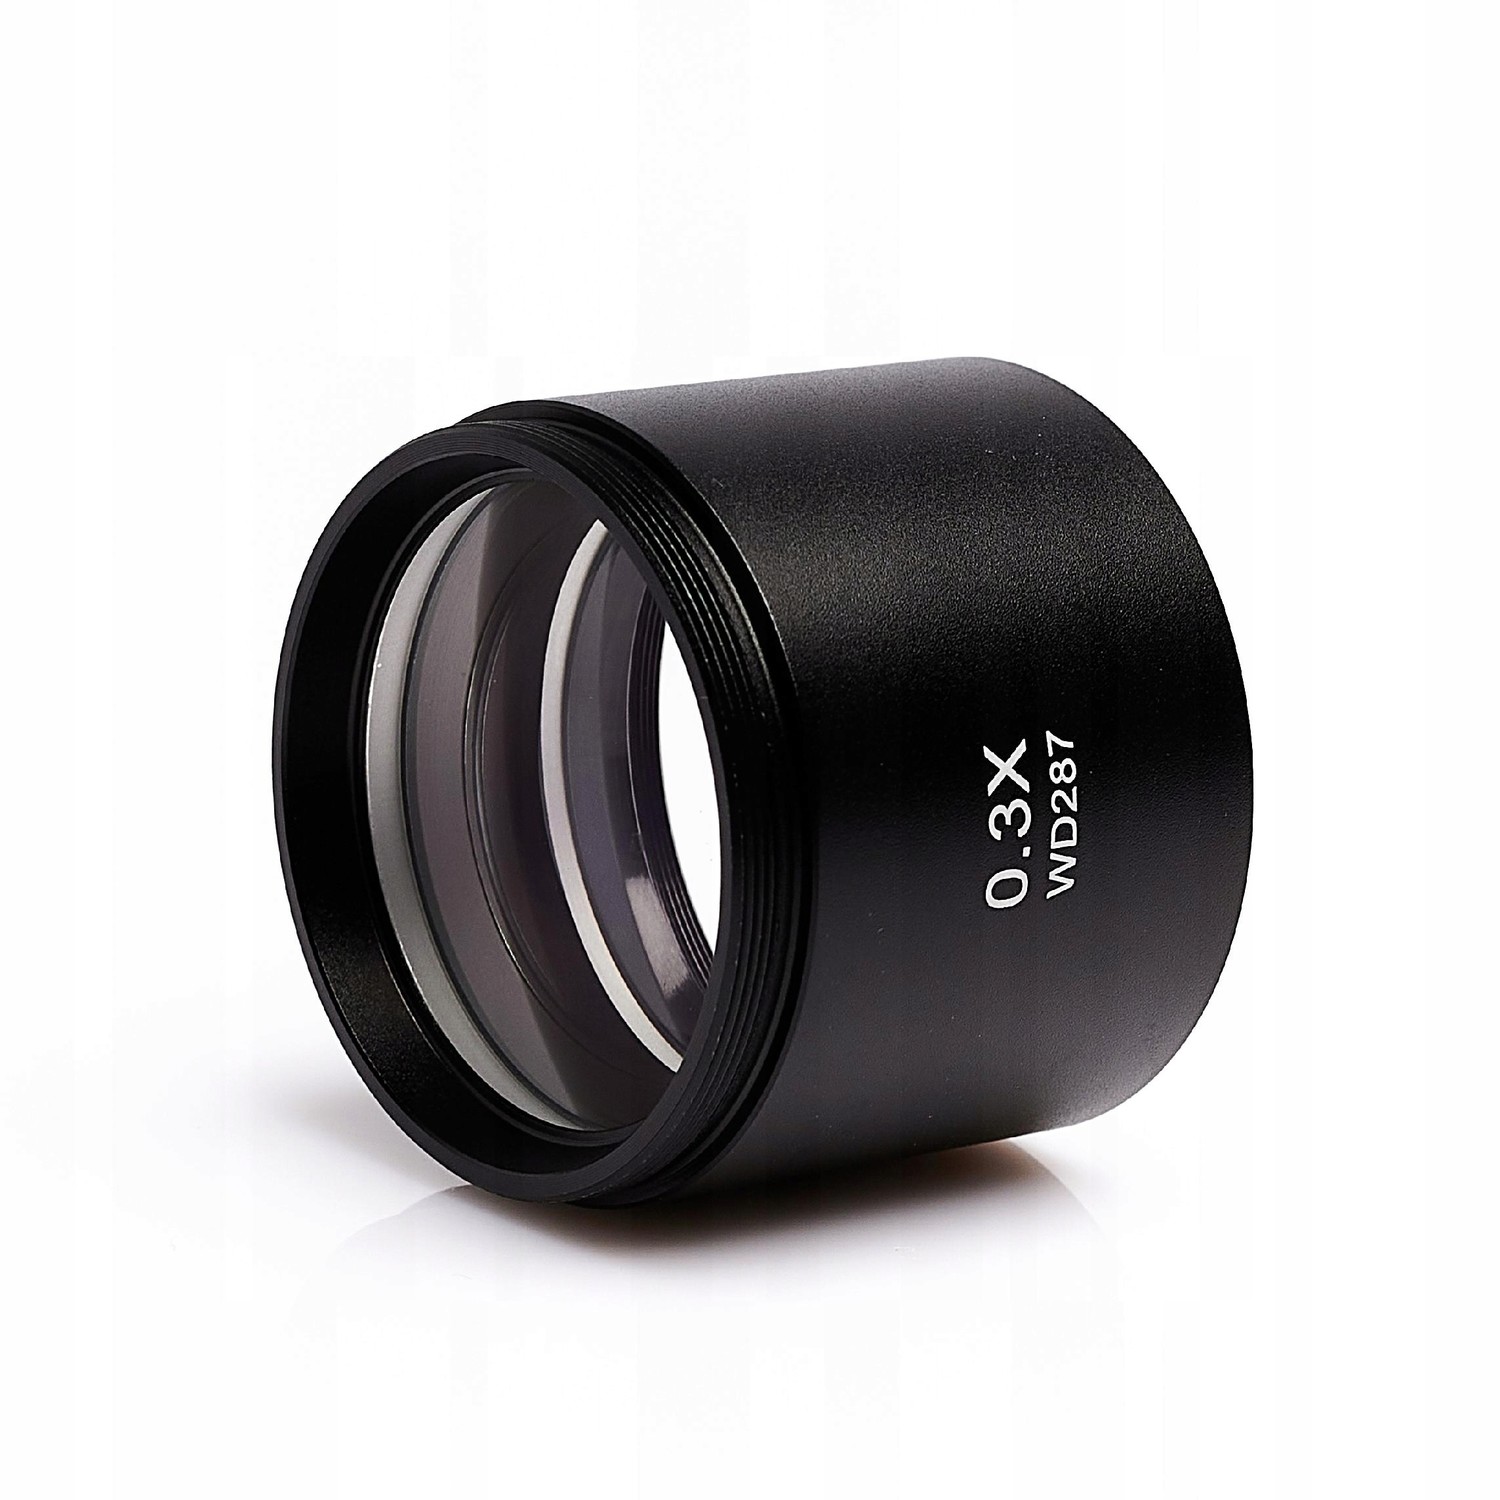 Barlová Čočka Objektiv 0,3X Wd 287MM 2,1-13,5X Pro Stereo Mikroskop Hq